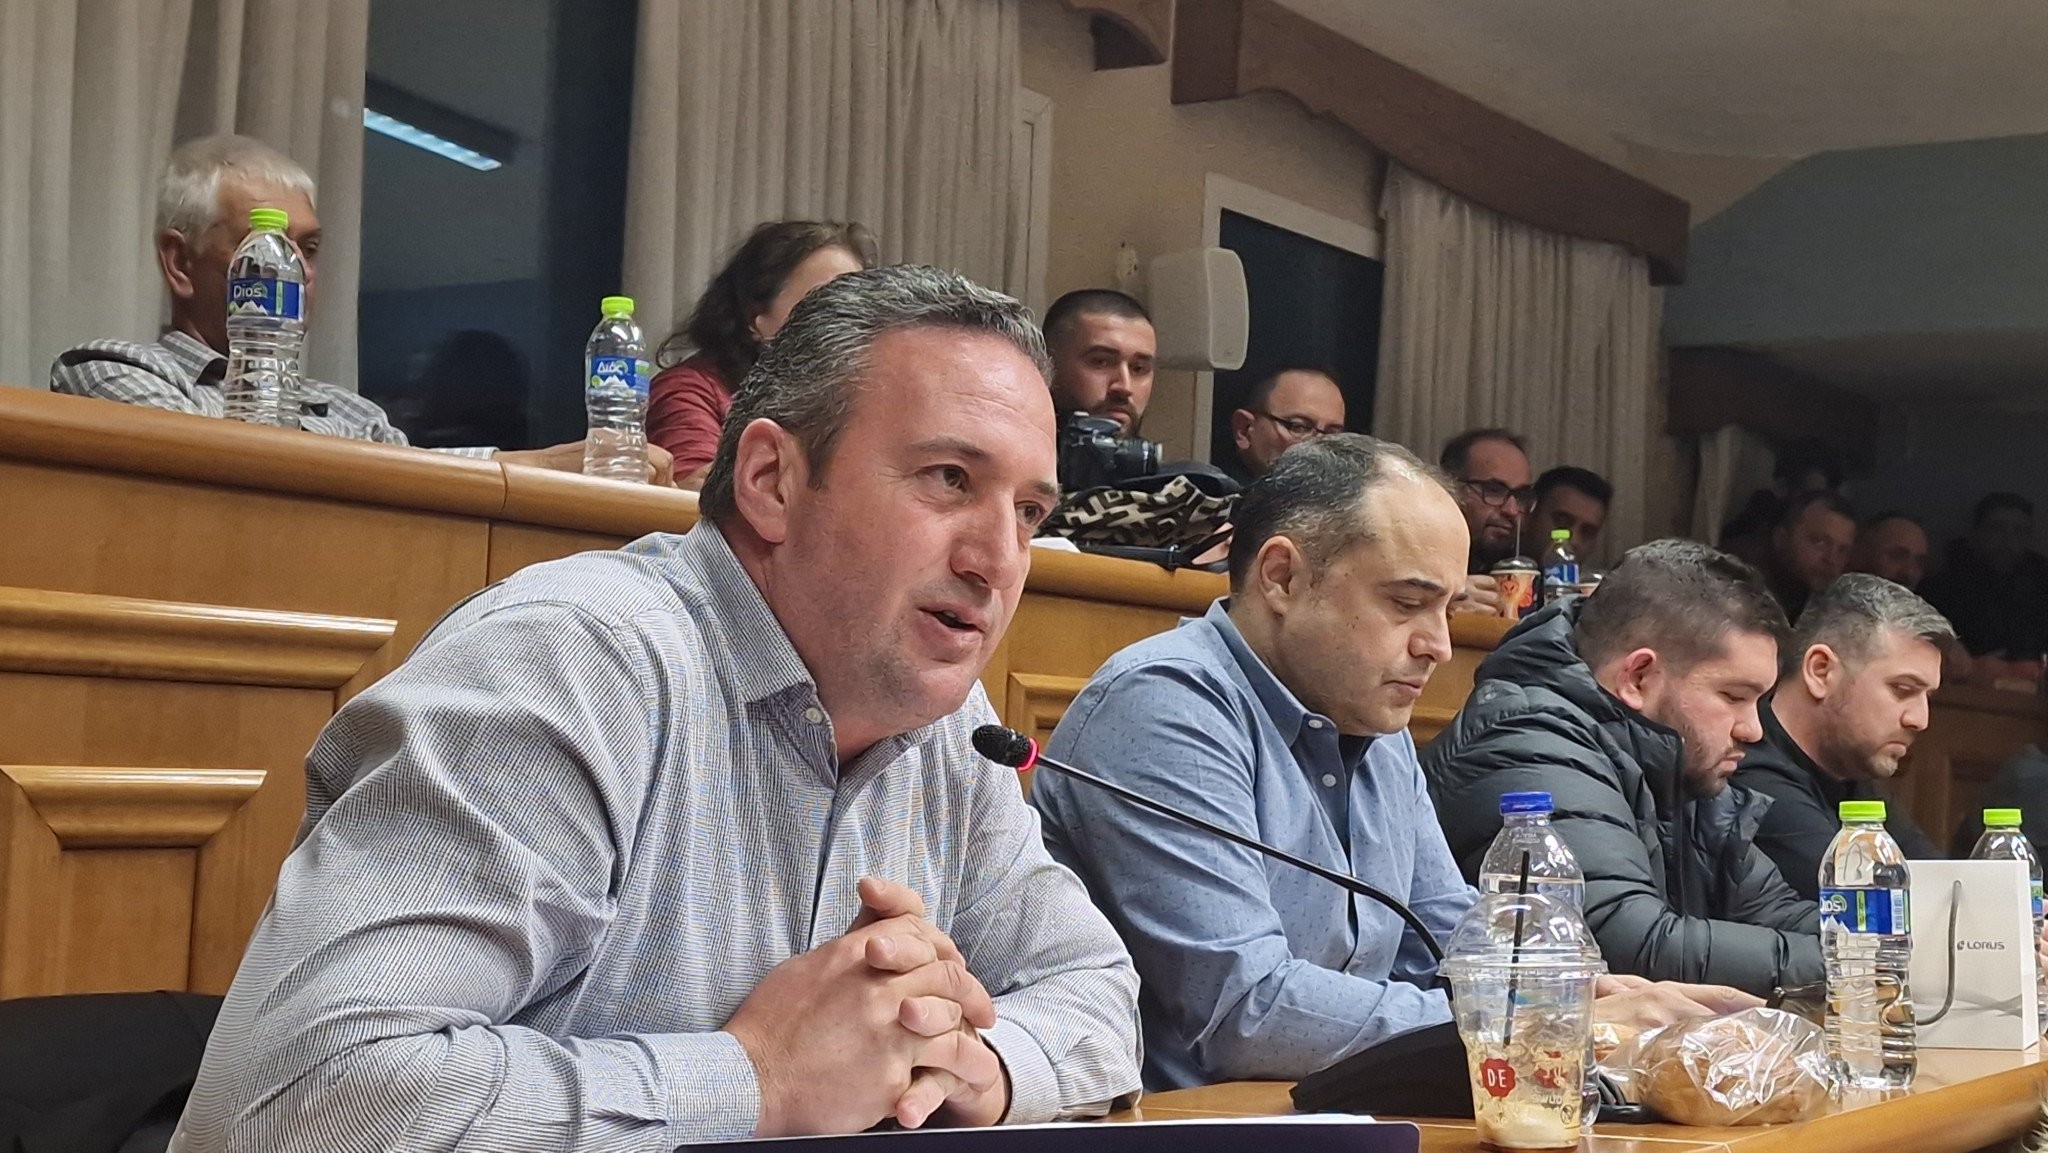 Μαραθώνια συνεδρίαση ΔΣ Αλμωπίας: Ψήφιση προϋπολογισμού και εκλογή Διοικητικών συμβουλίων